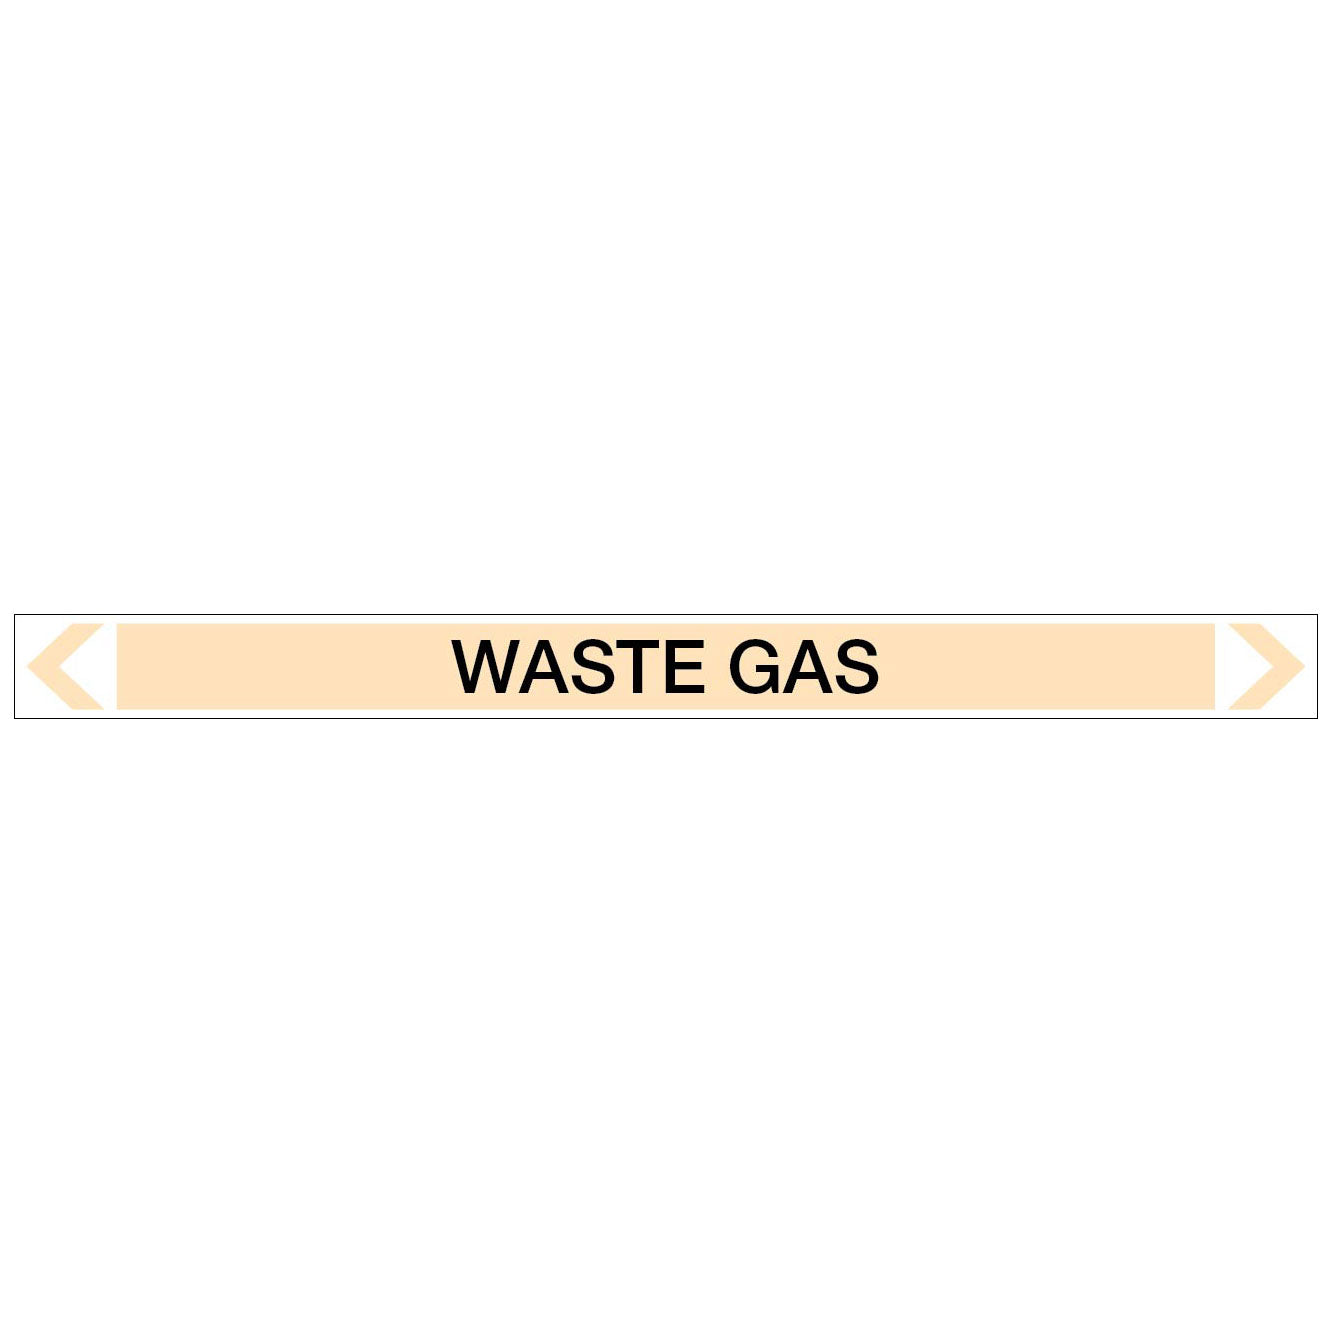 Gases - Waste Gas - Pipe Marker Sticker